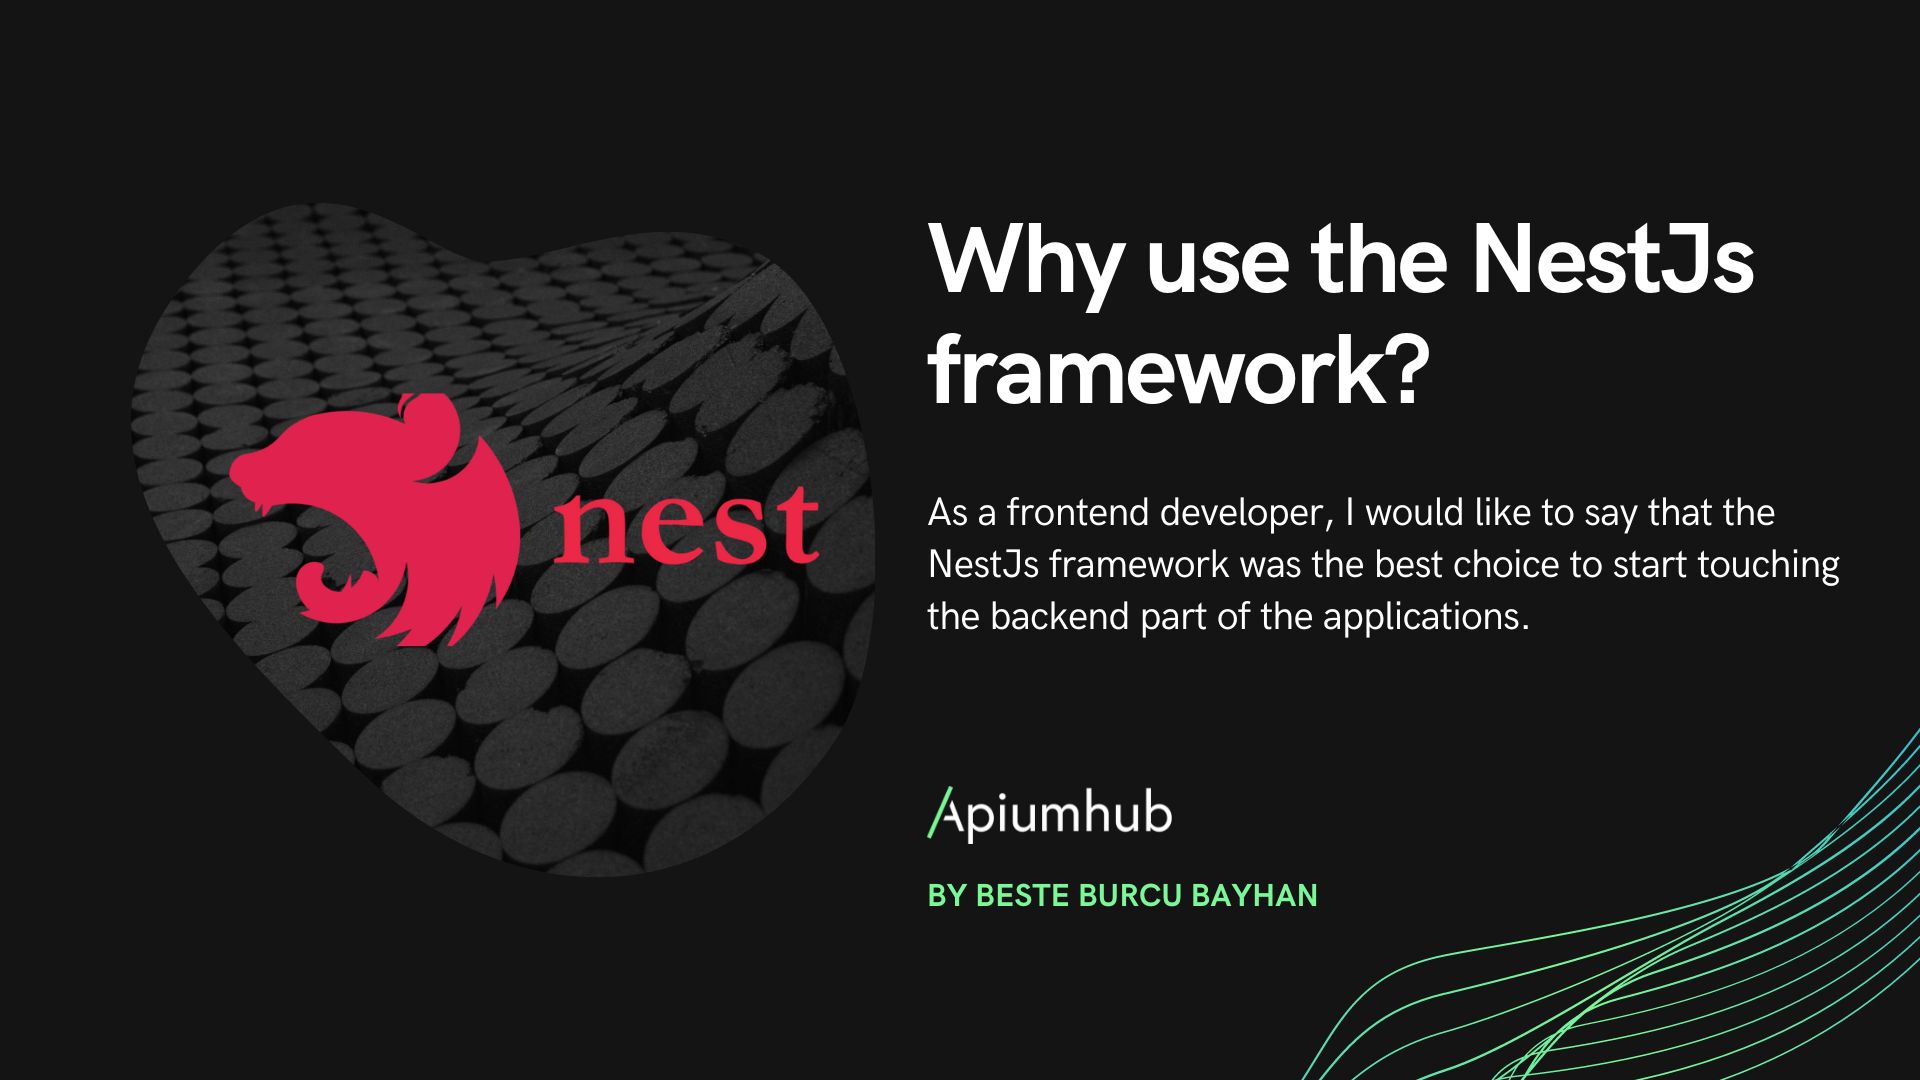 Why use the Framework NestJS